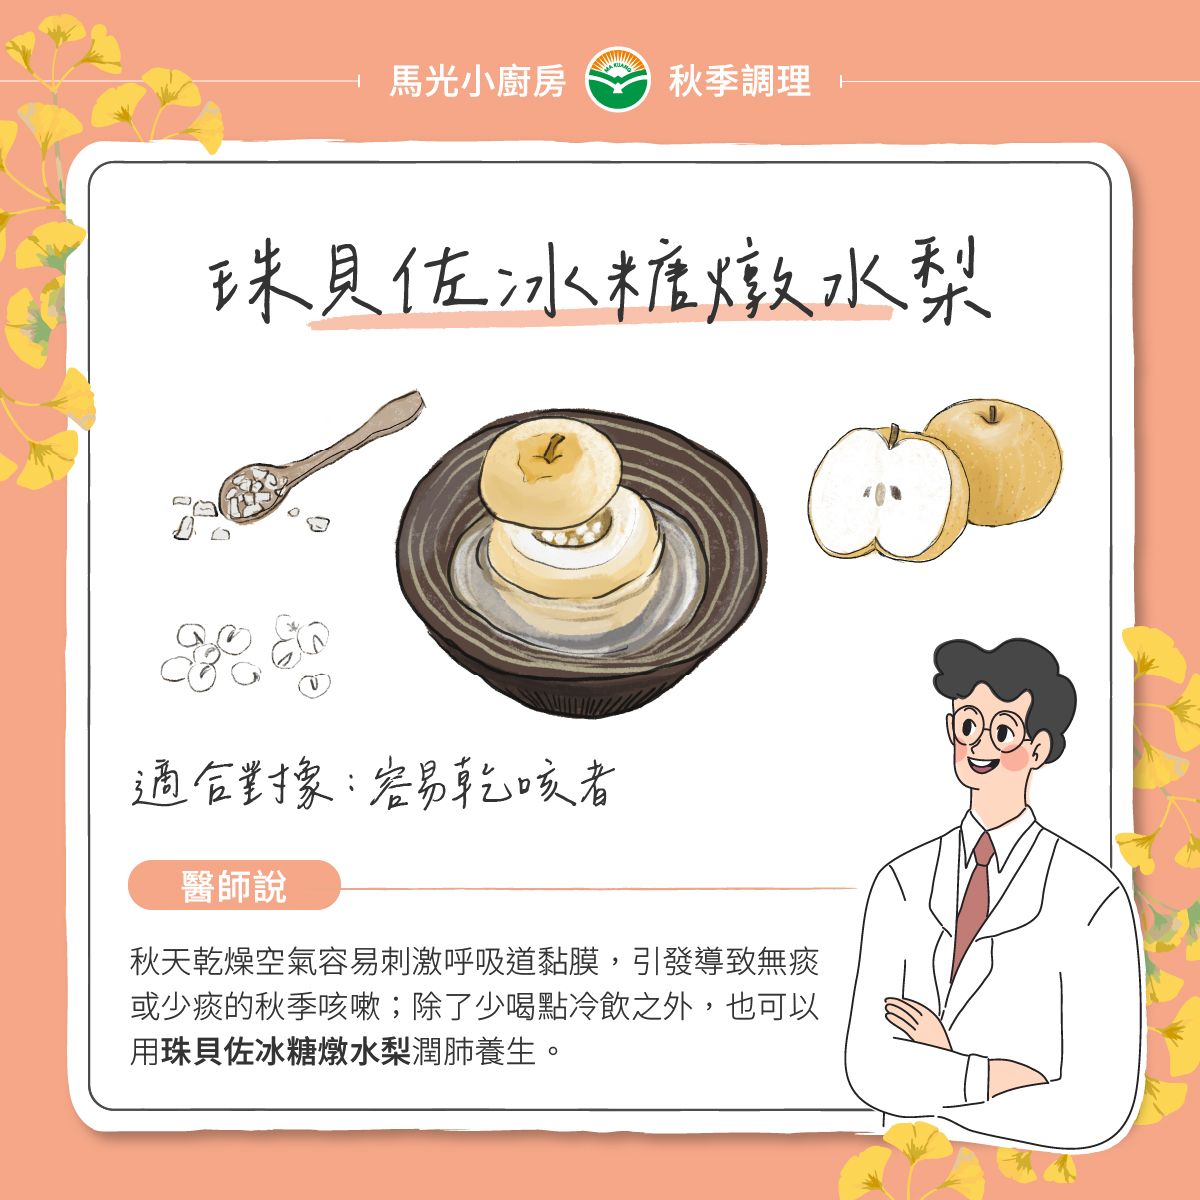 中醫食療養生-珠貝佐冰糖燉水梨